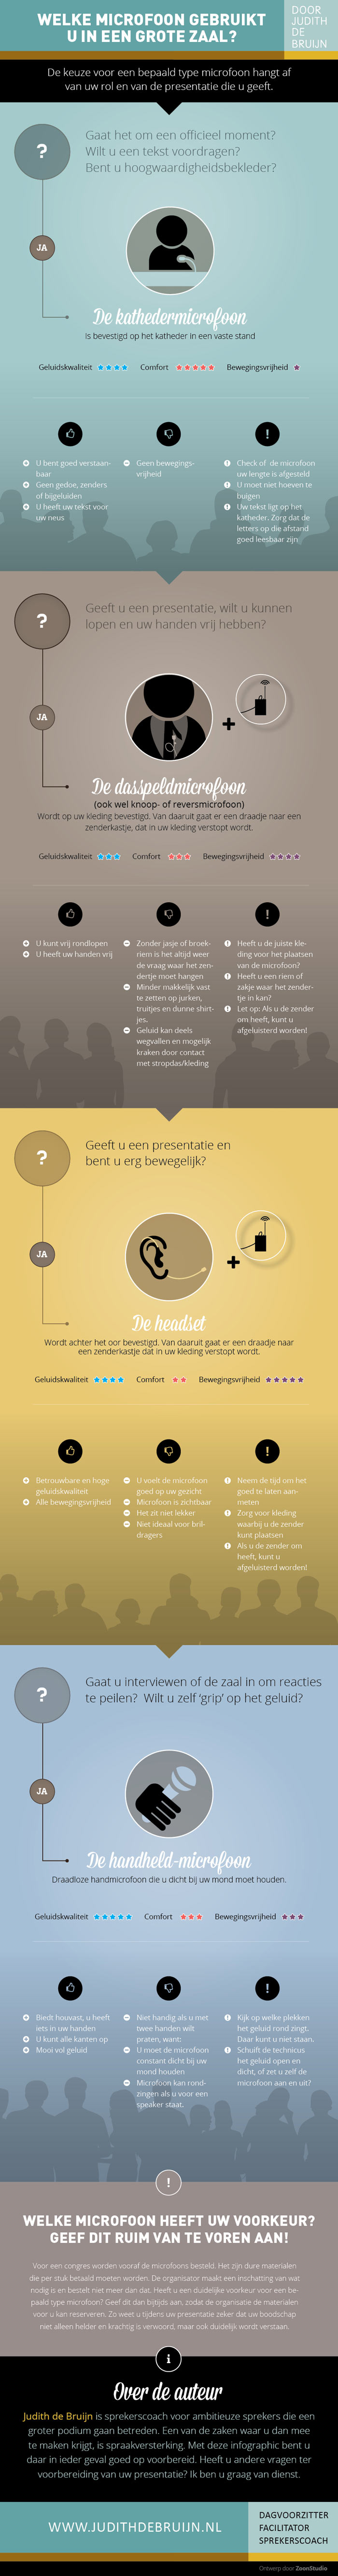 infograpic-JudithdeBruijn-DEF-web